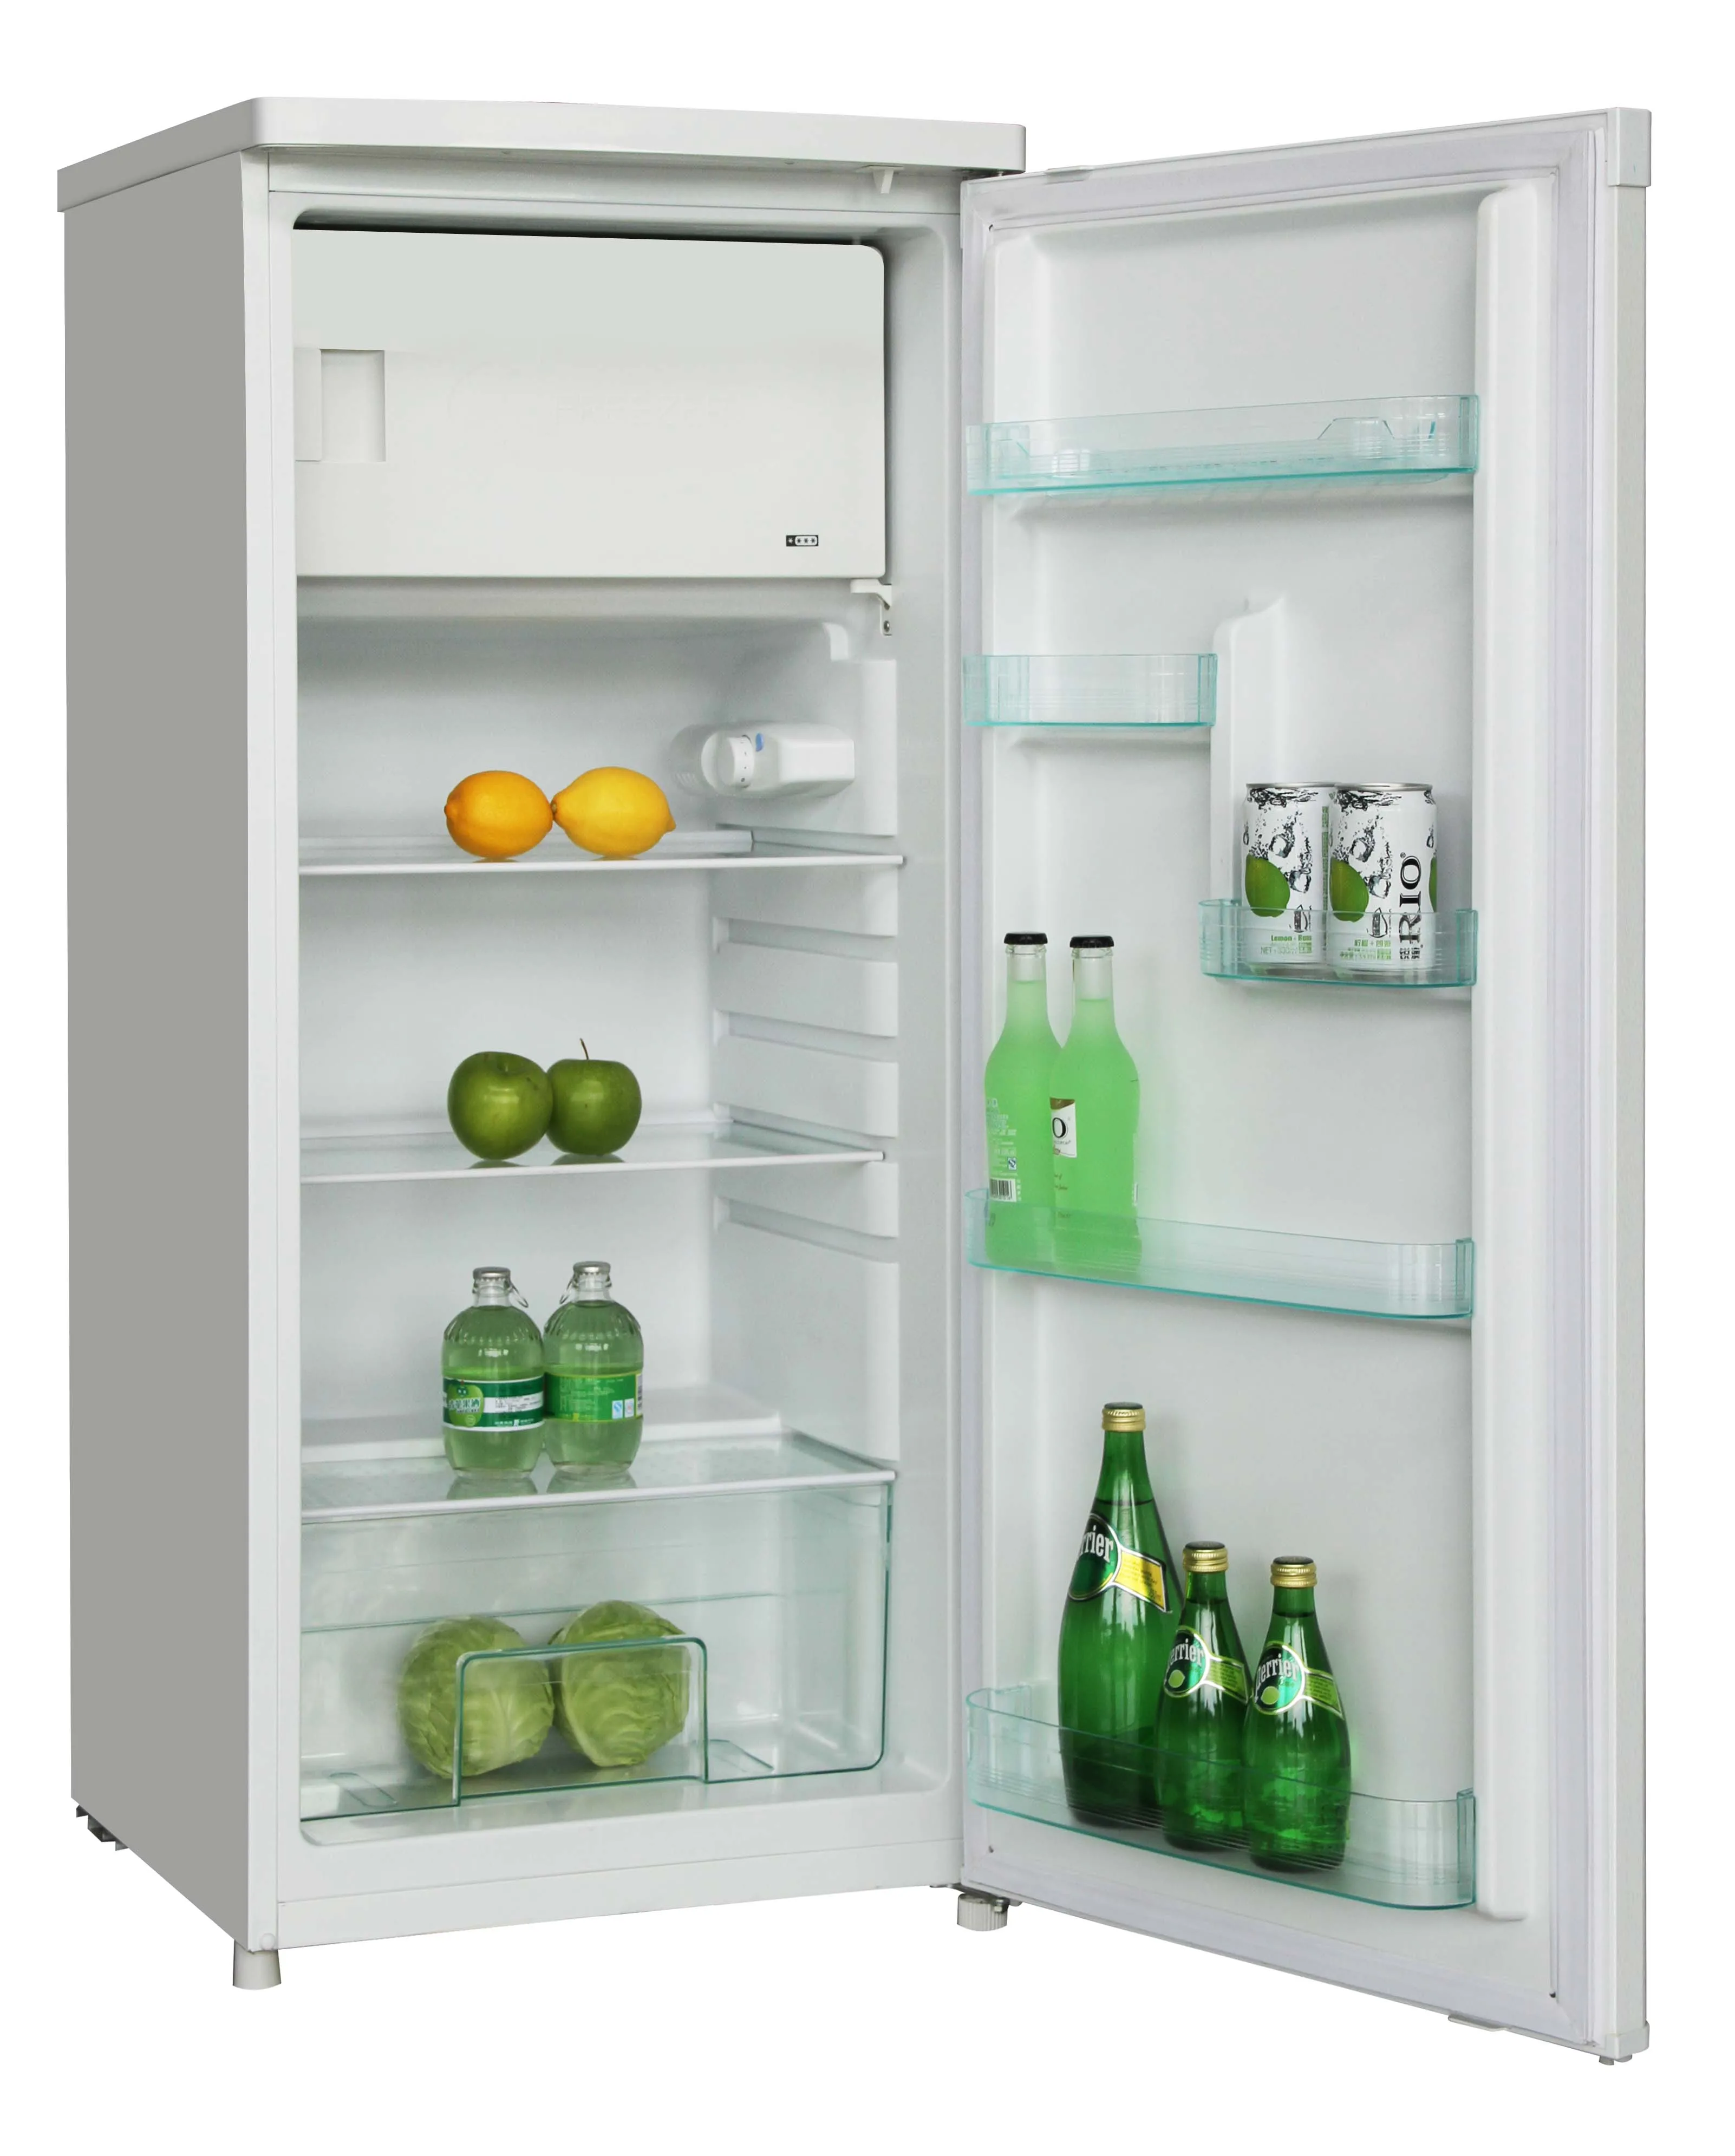 シングルドアコンパクト冷蔵庫冷凍庫なし Buy シングルドア冷蔵庫冷凍庫なし、コンパクト冷蔵庫、シングルドアコンパクト冷蔵庫